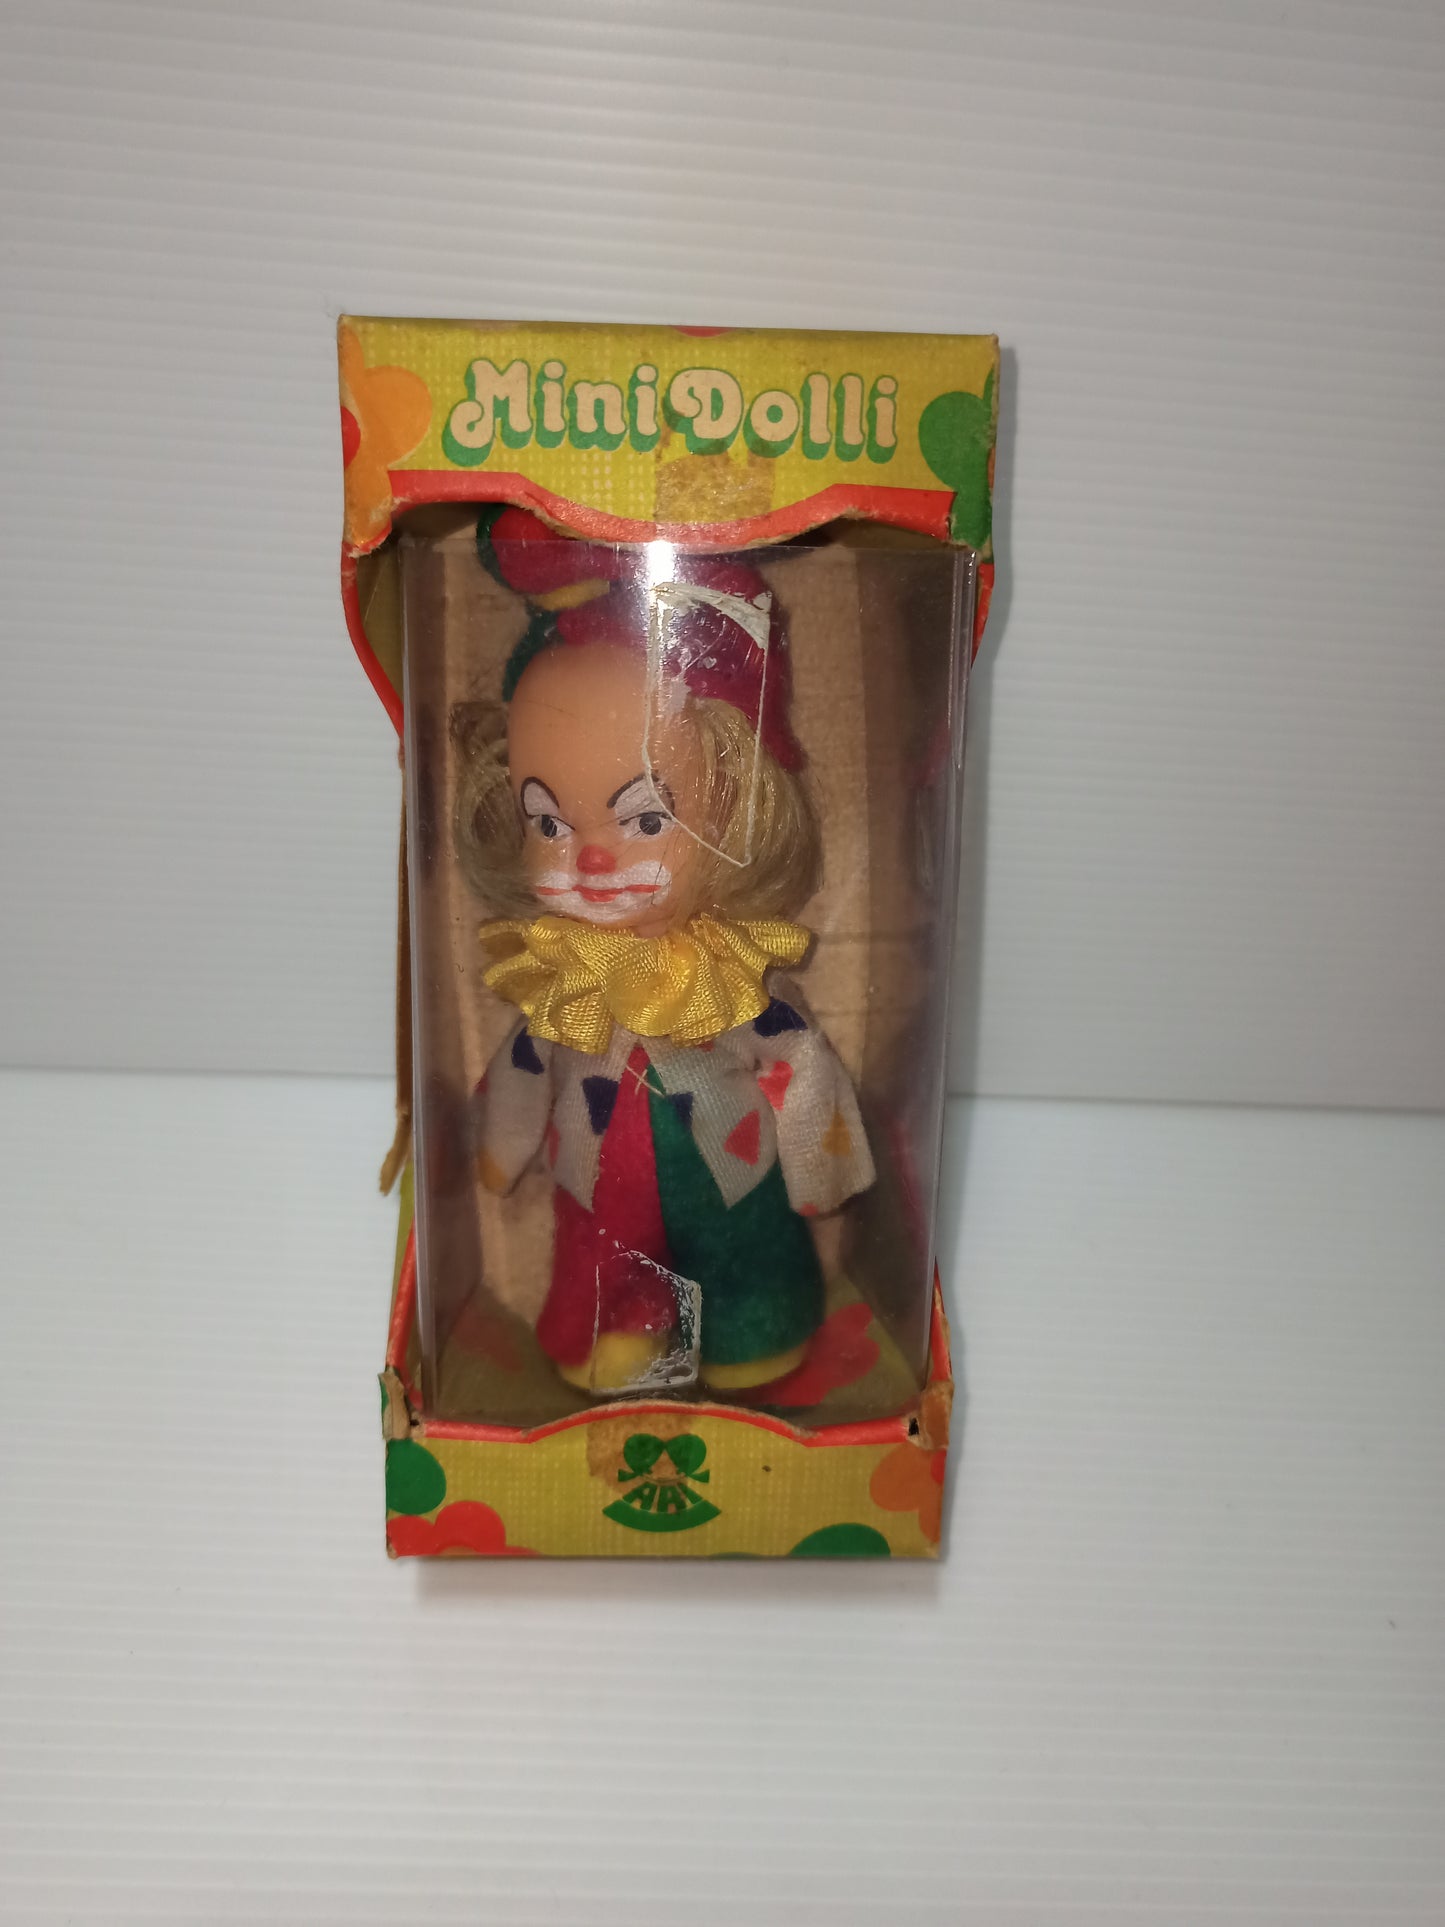 Mini Clown Ari Konigseer Puppen doll, 1980s